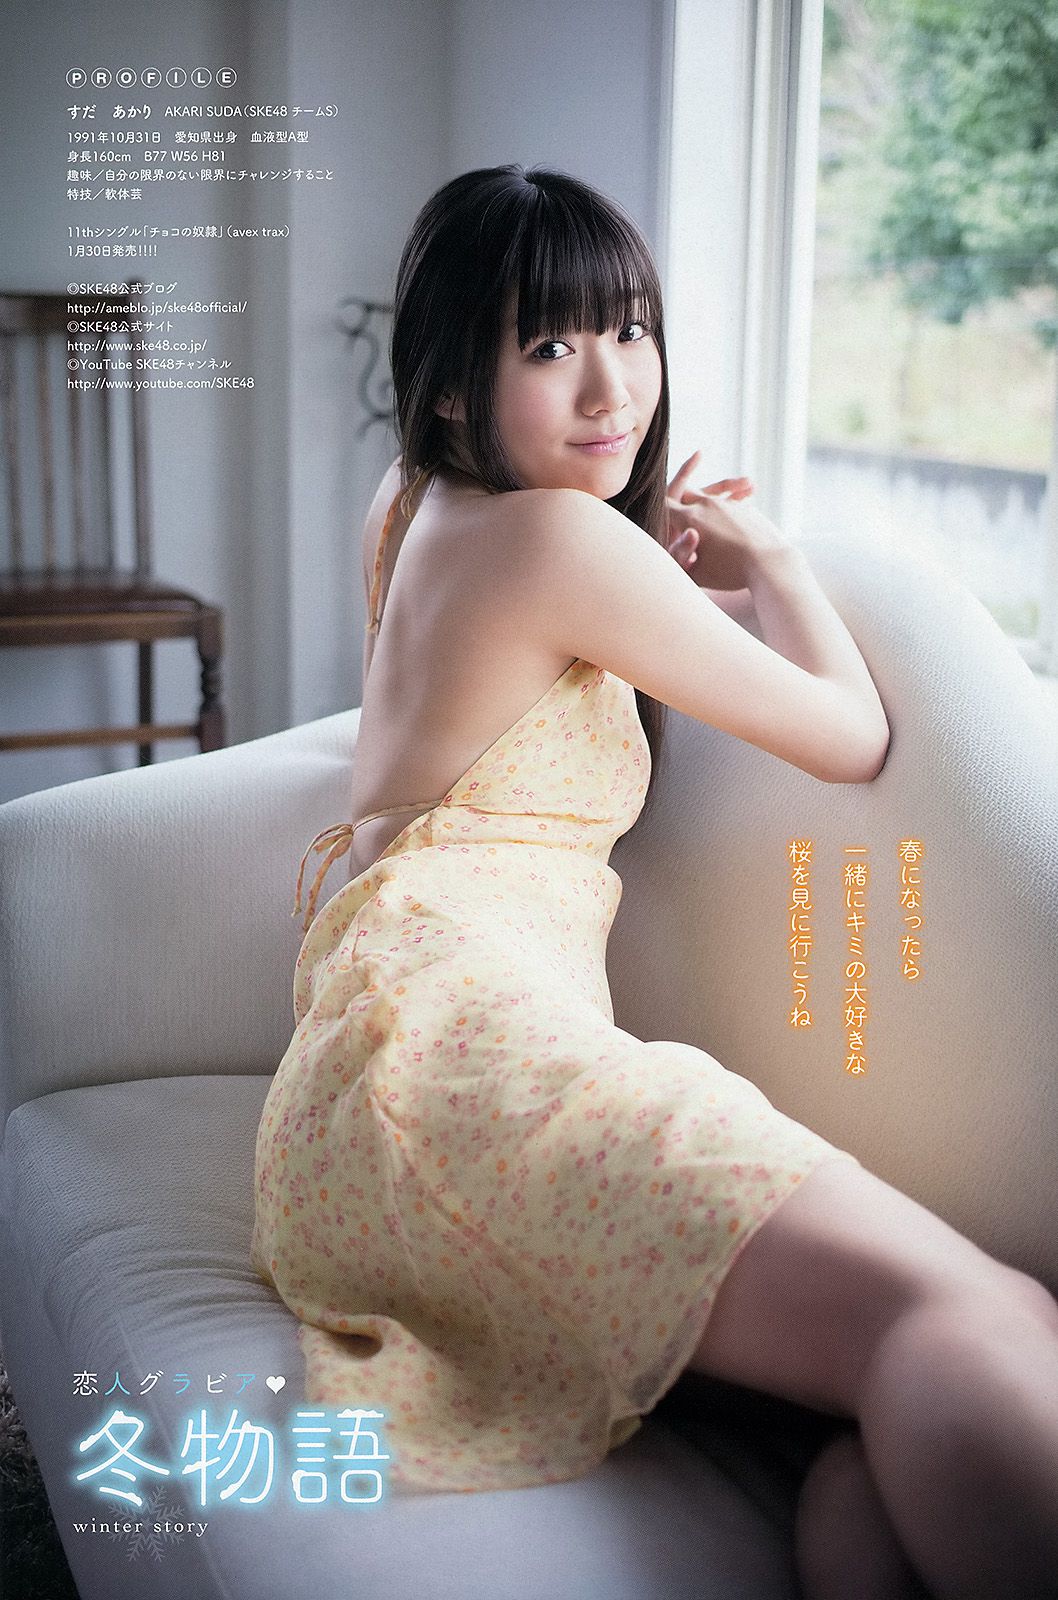 Matsui Rena Suda Akari [Jong dier] 2013 No.03 Photo Magazine Pagina 7 No.54daf0